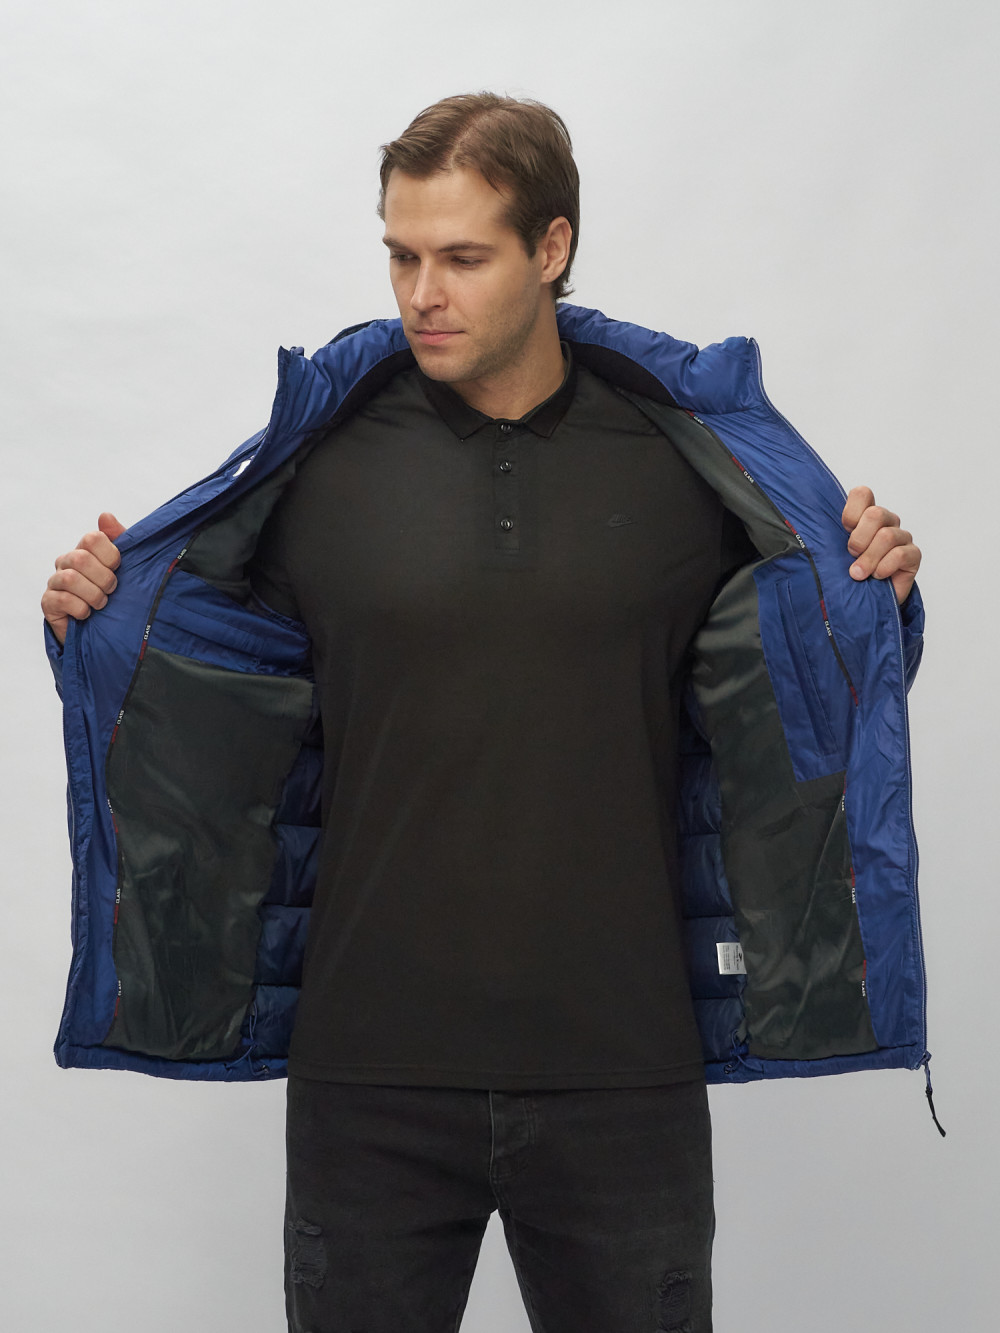 Купить куртку мужскую спортивную весеннюю оптом от производителя недорого в Москве 62187S 1